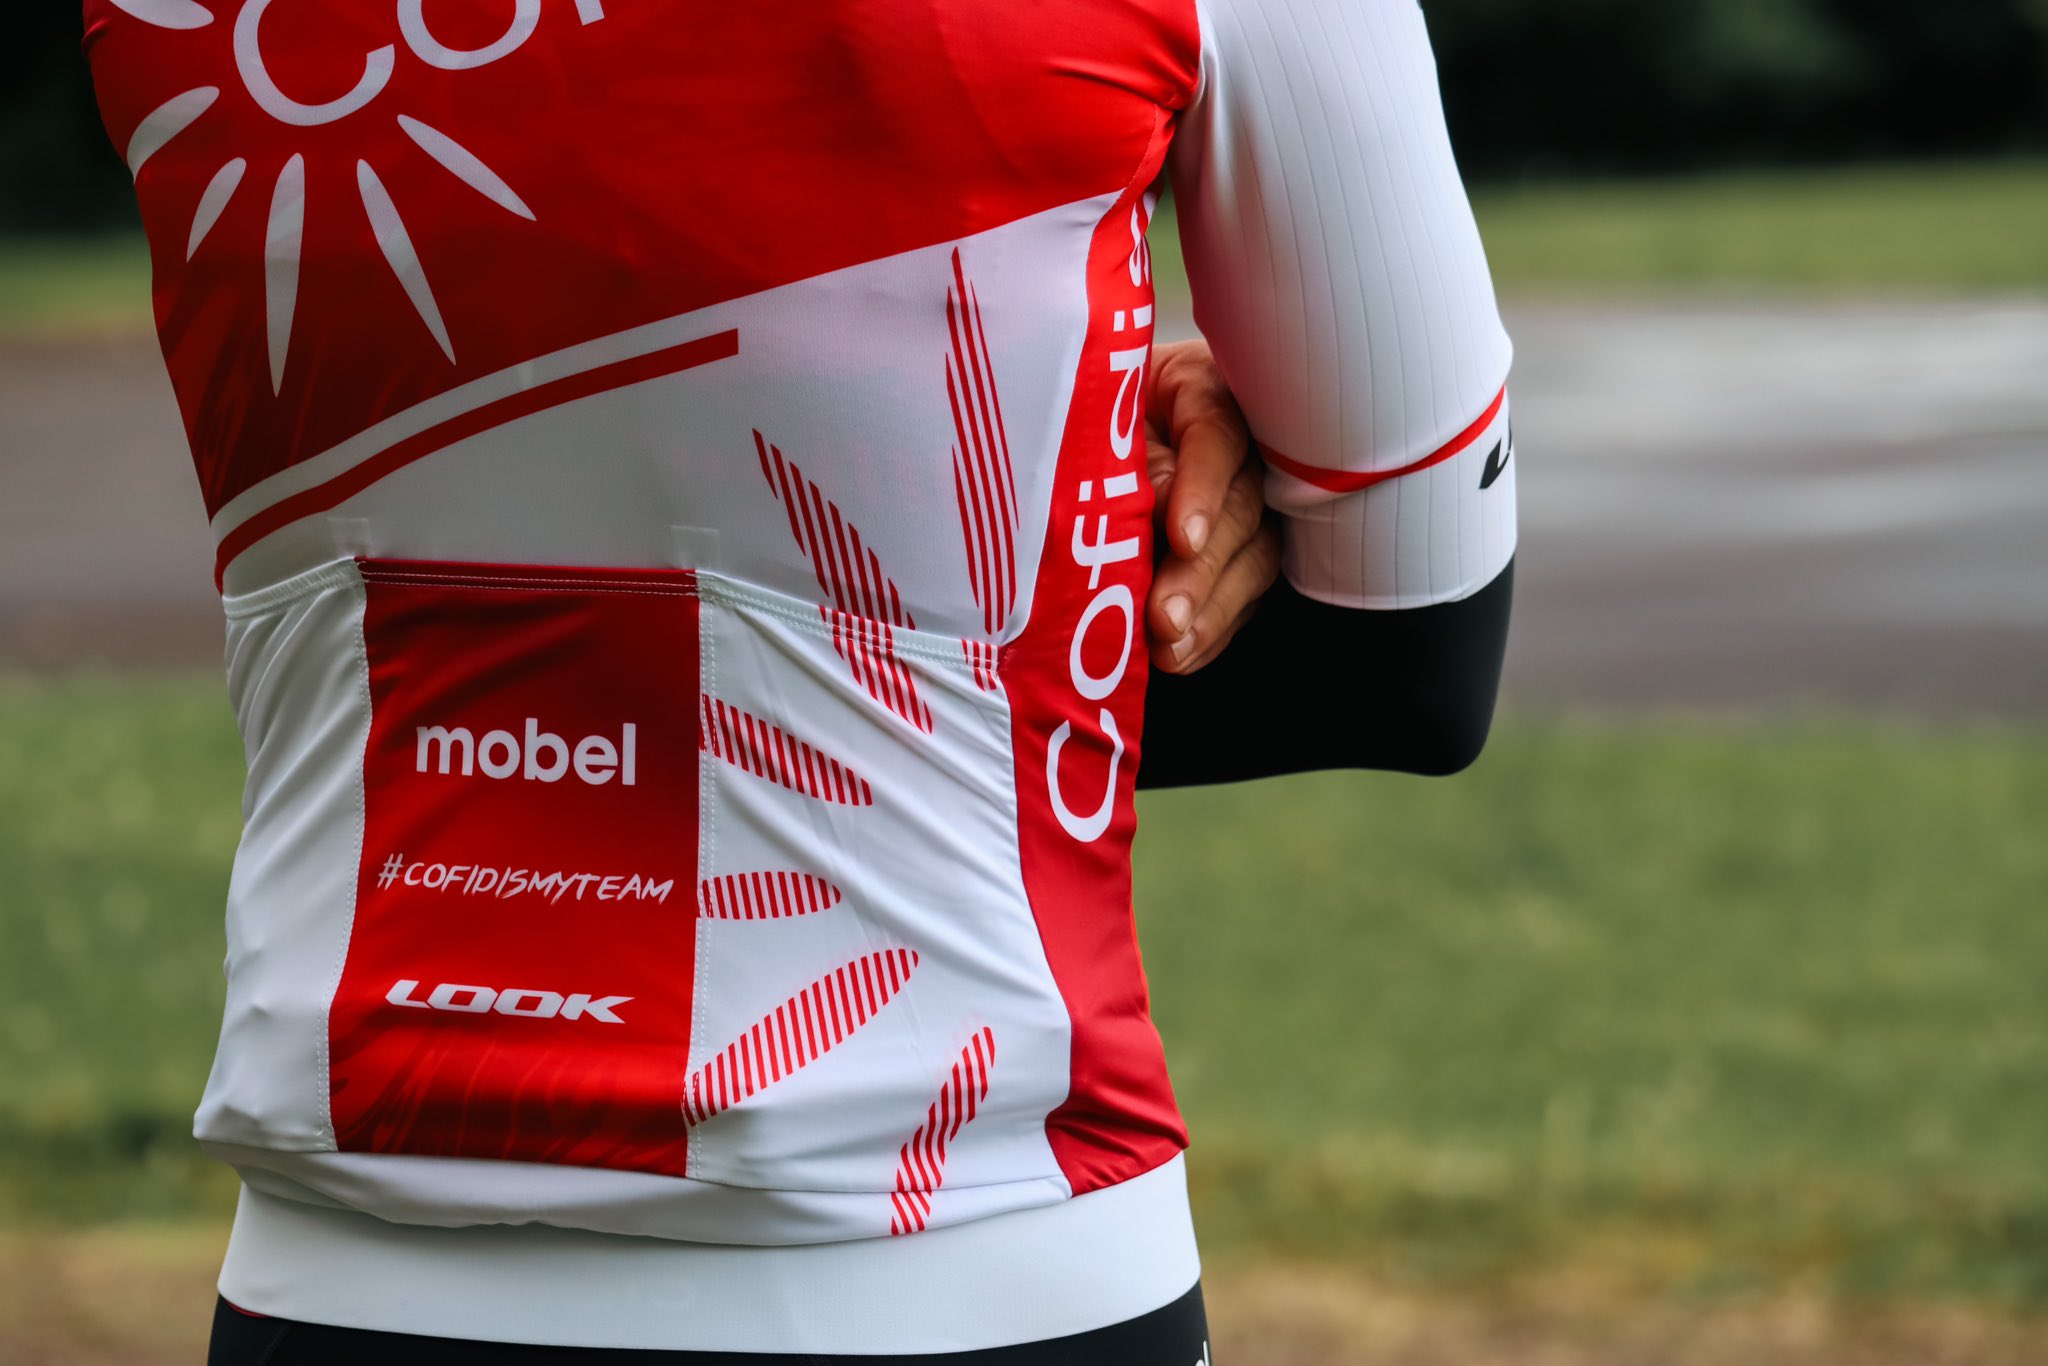 L'équipe Cofidis a présenté un nouveau maillot qui sera porté par les coureurs de l'effectif lors du prochain Tour de France